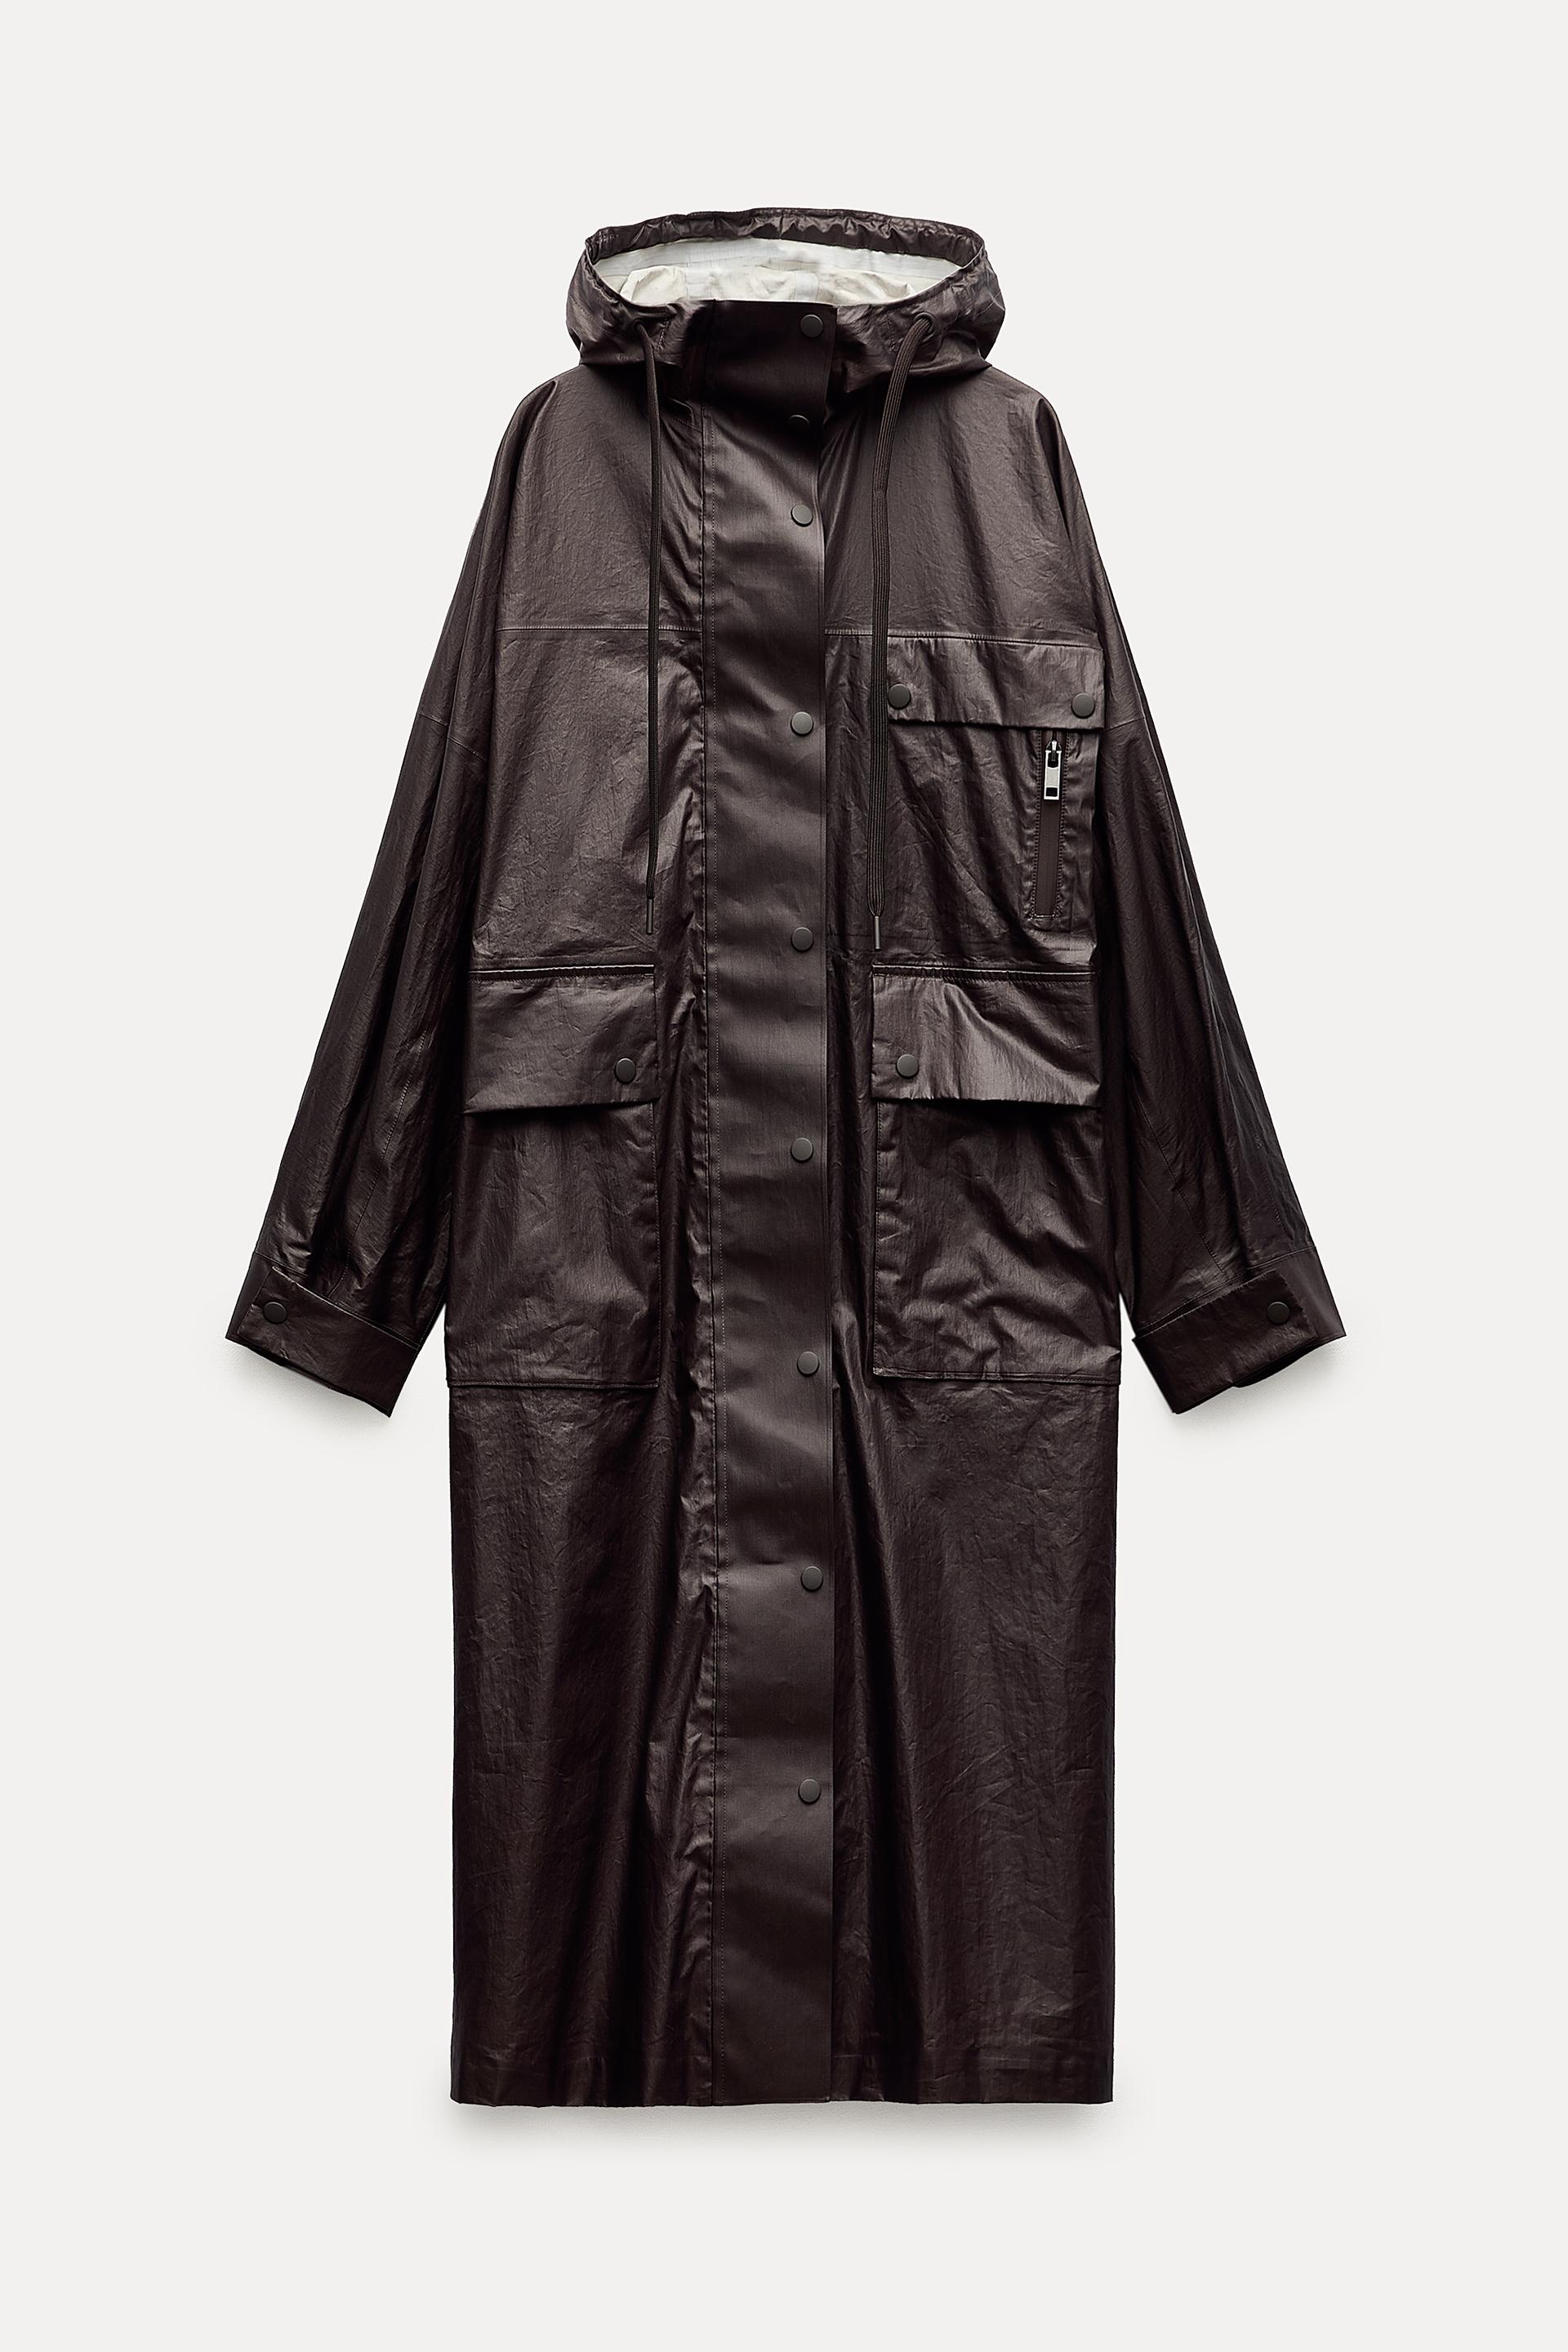 Longcoats Morwenna Women's Fleece Jacket (zips into Longcoats